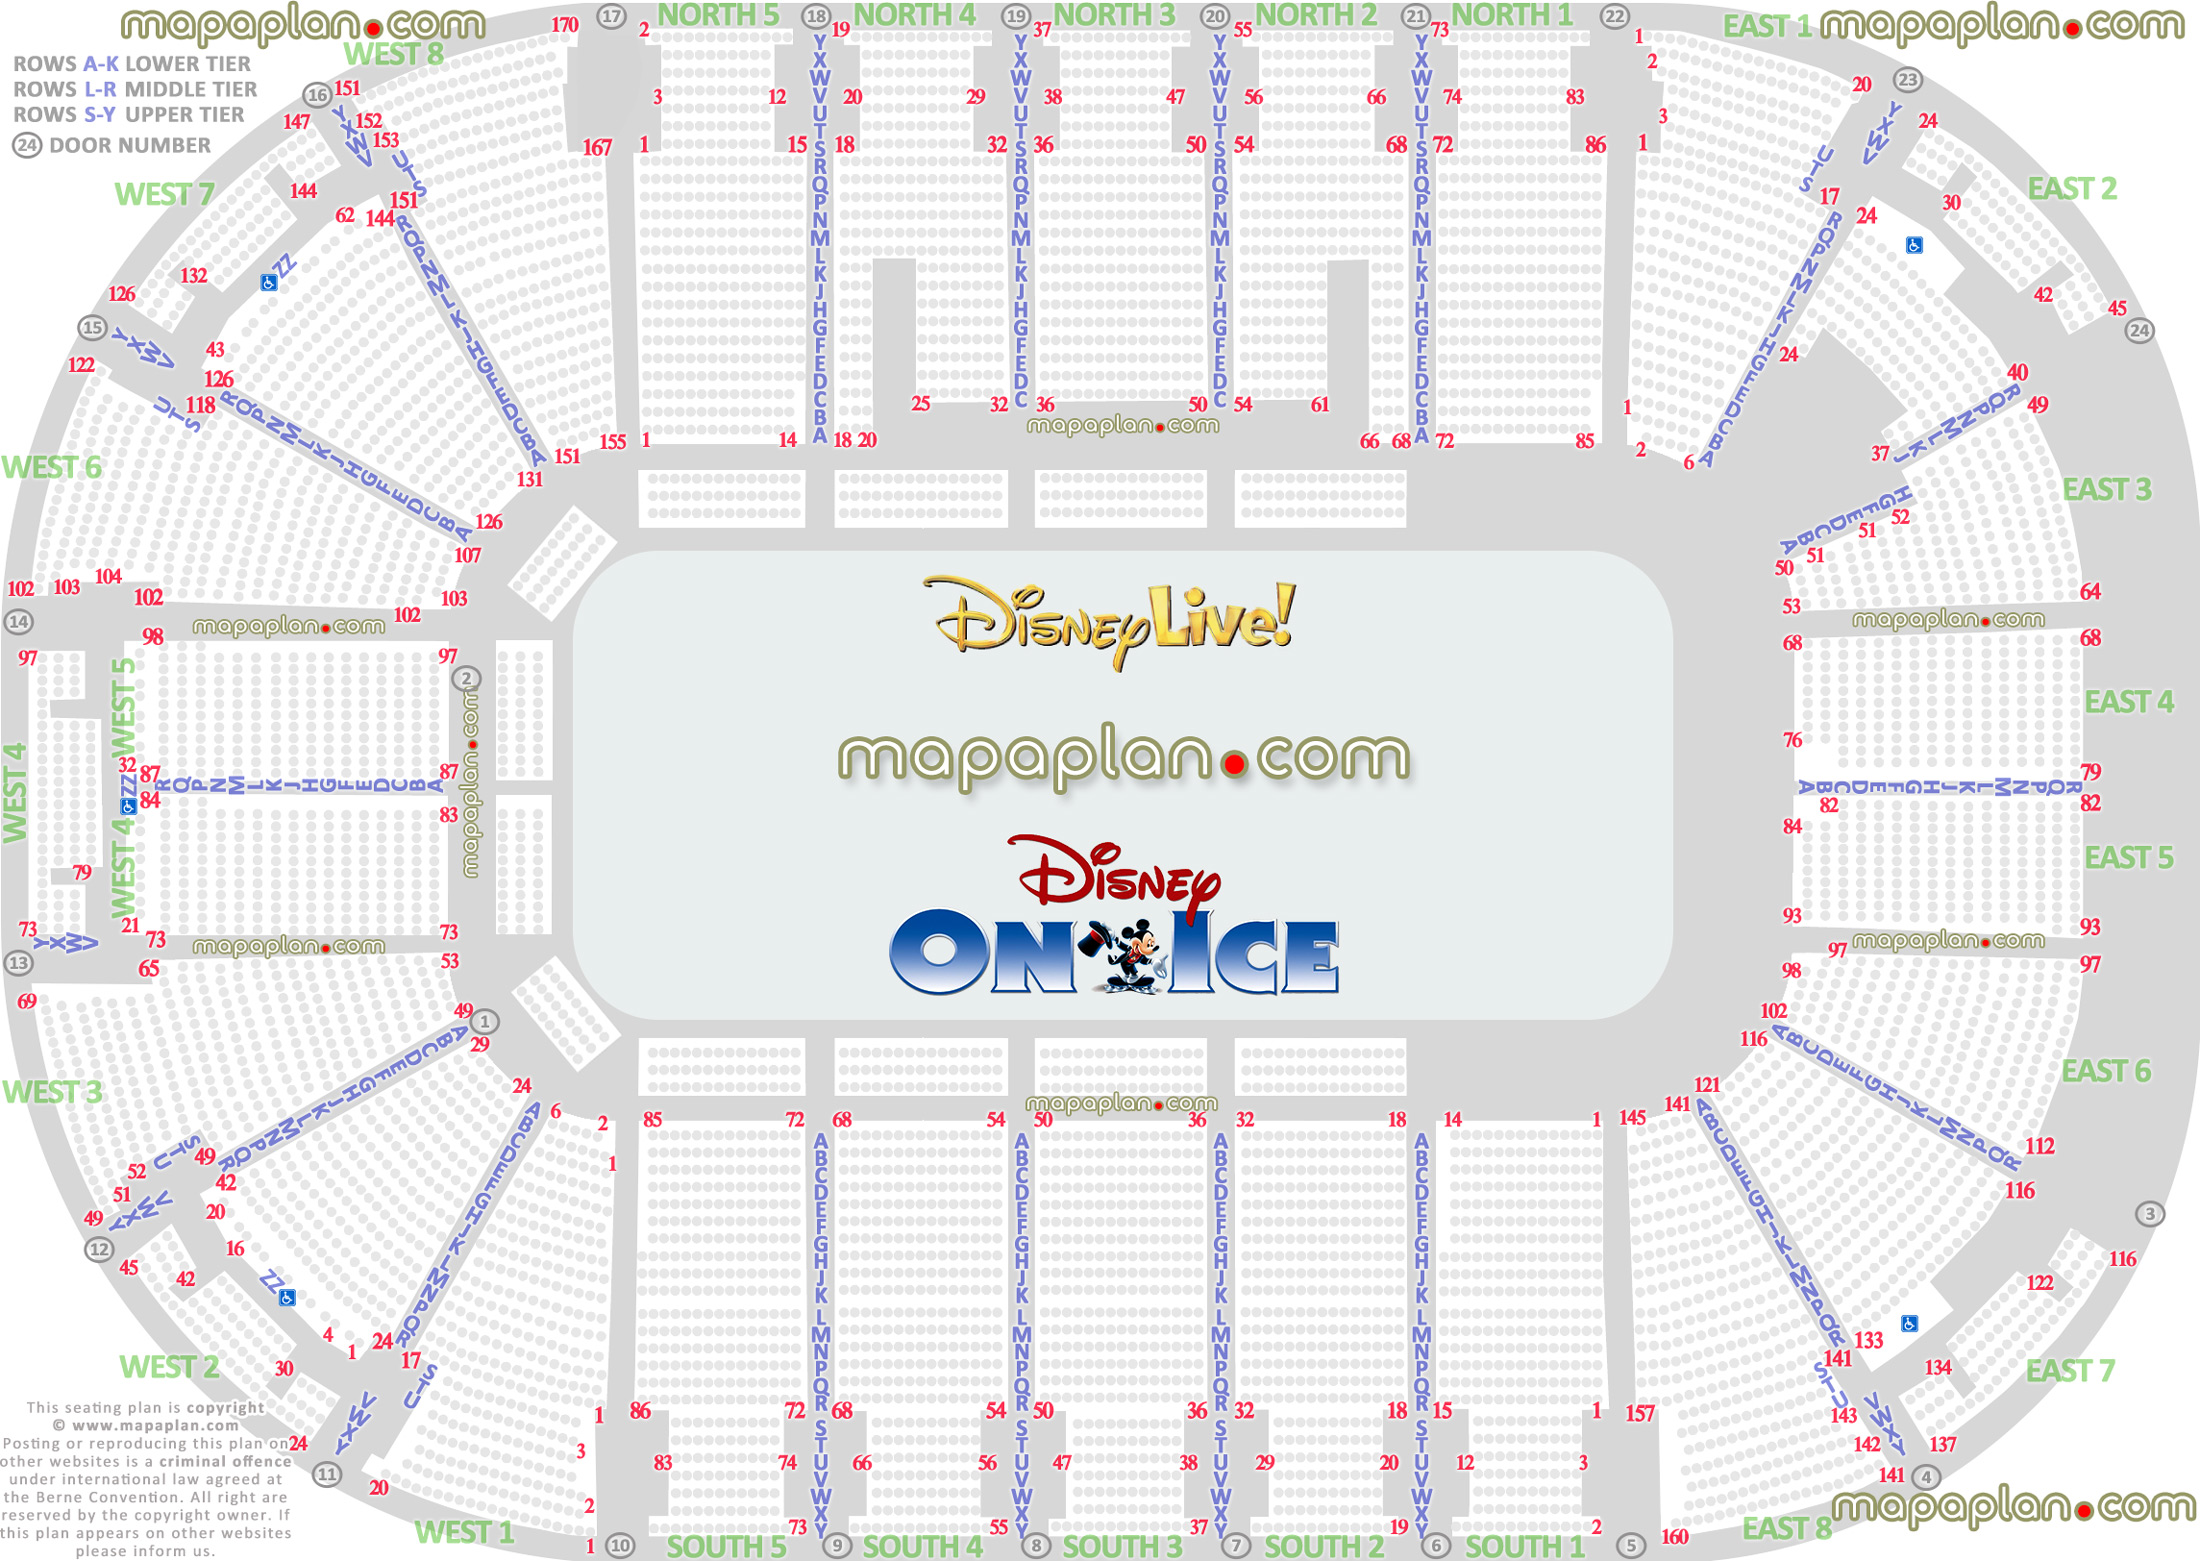 Odyssey SSE Arena Disney Live & Disney on Ice arena